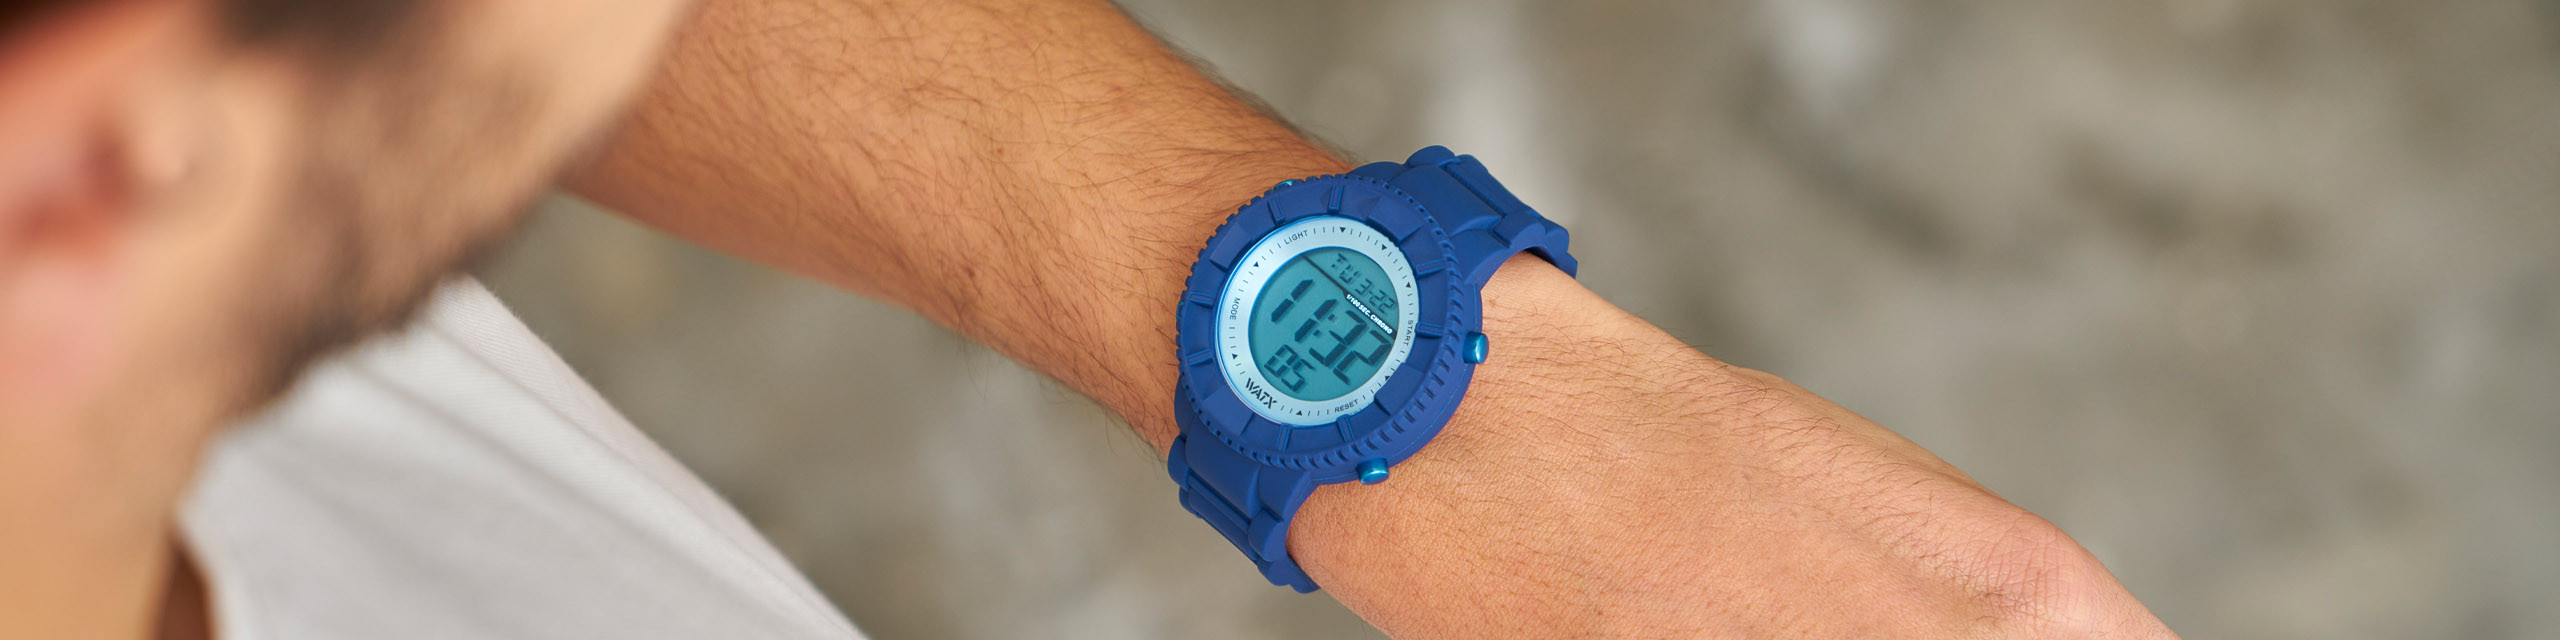 Compra relógios em silicone para homem - Watx Portugal